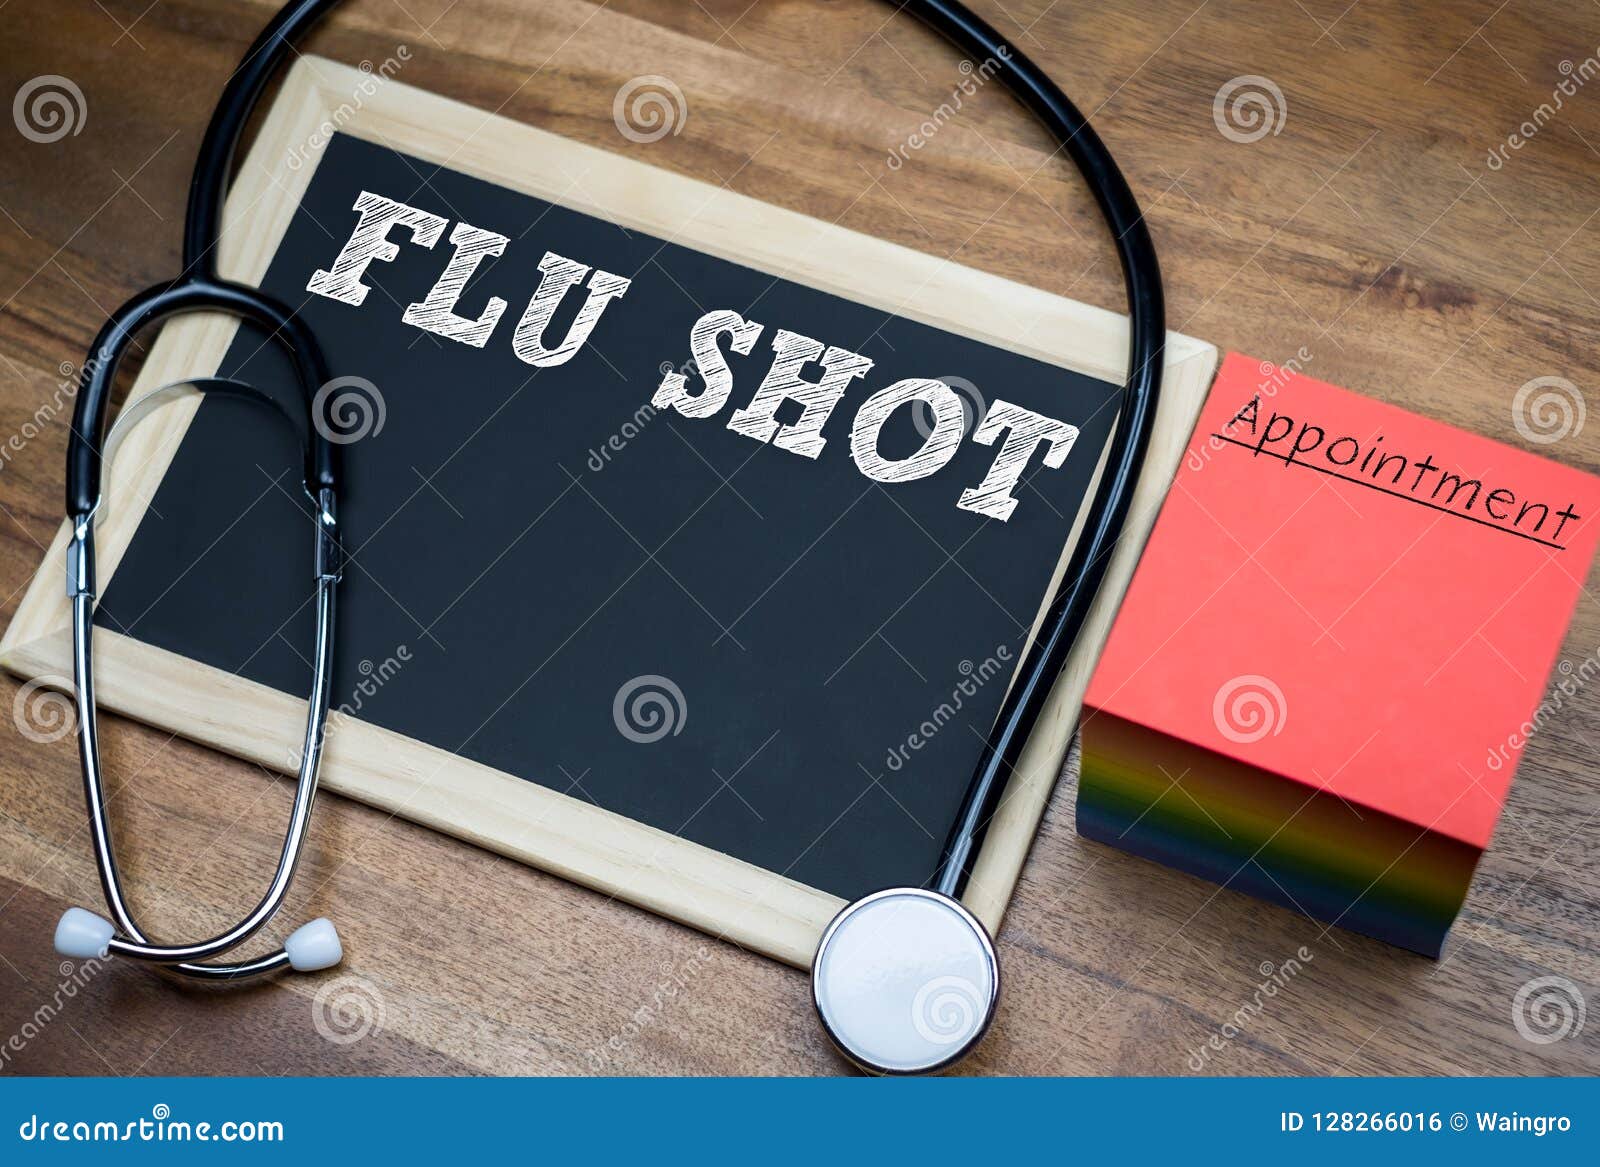 flu shot - influenza vaccine